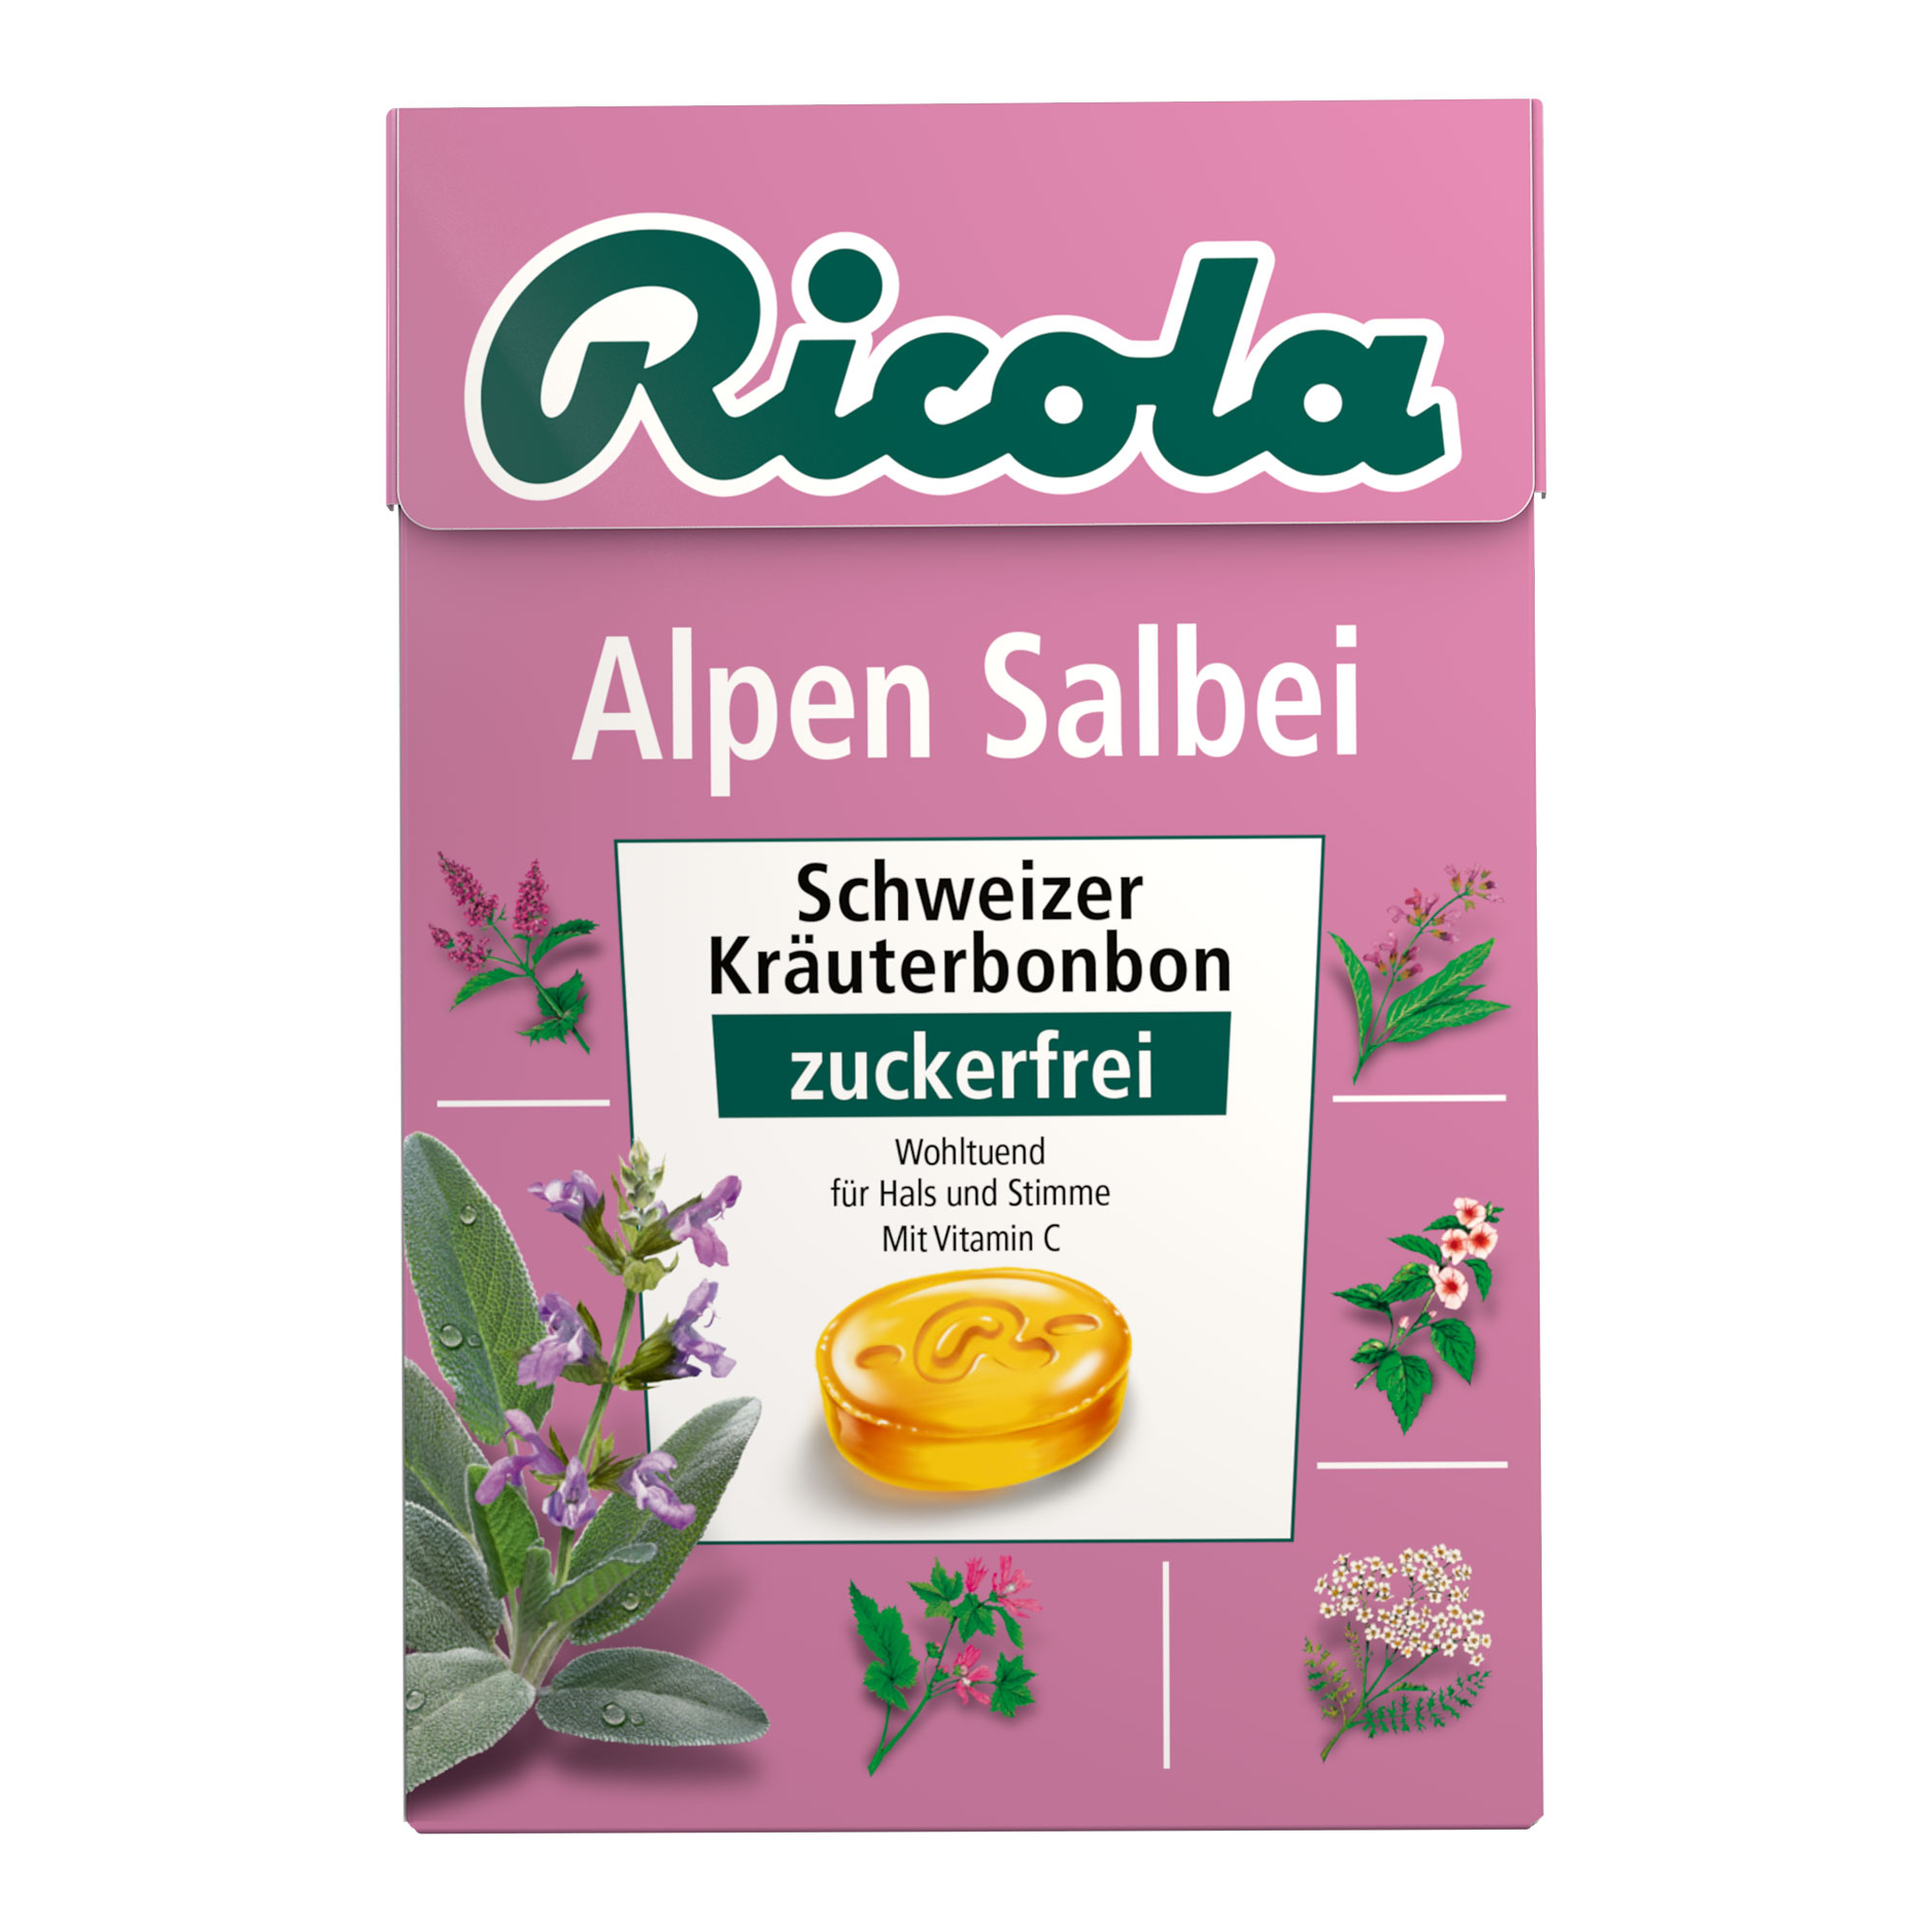 Schweizer Kräuterbonbons mit Vitamin C und Salbei. Zuckerfrei.